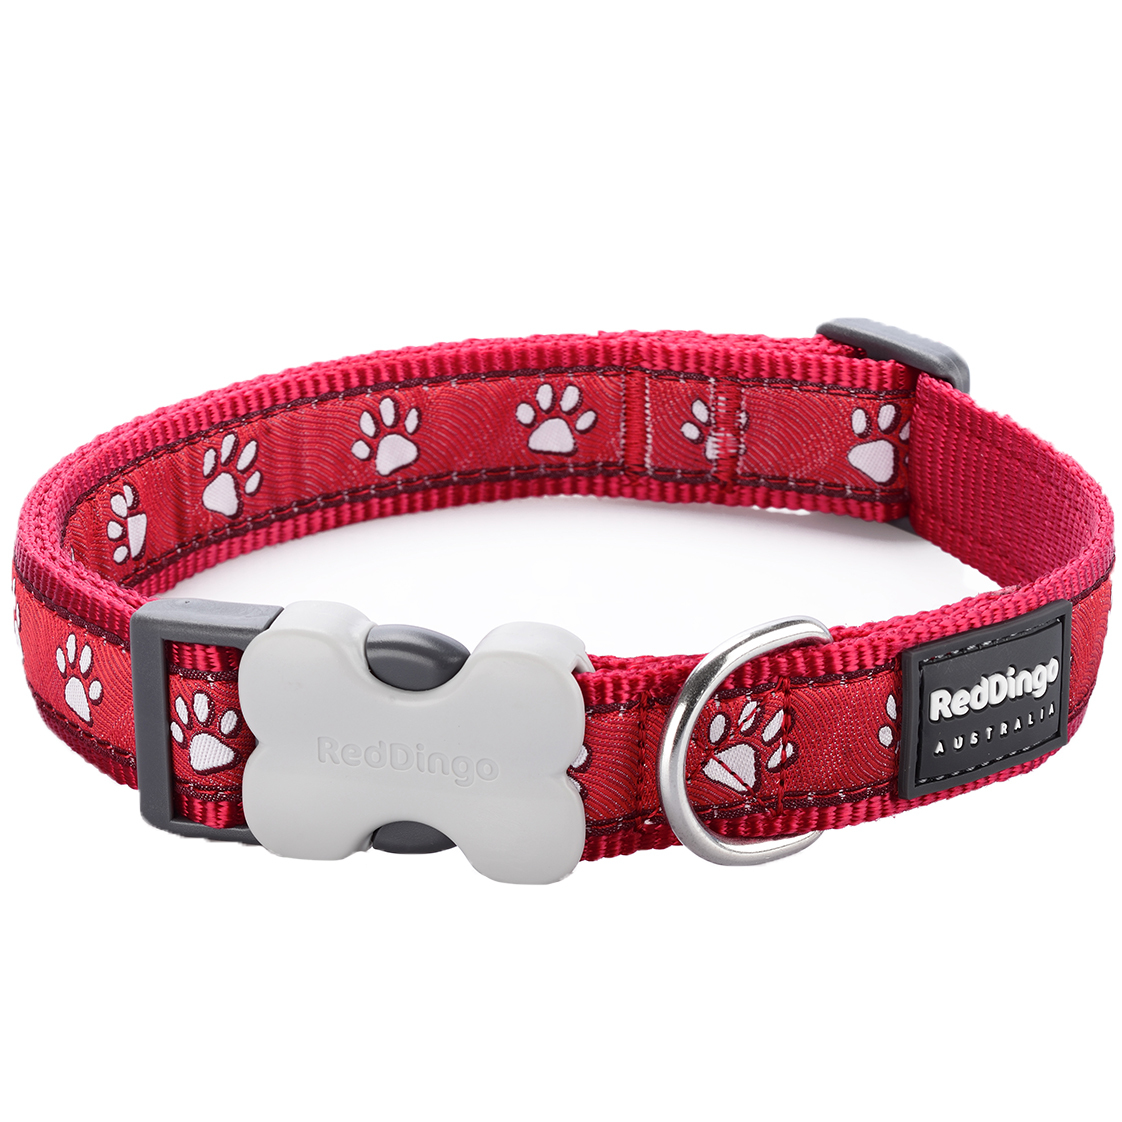 Top Paw® Signature Dog Collar Dog Collars PetSmart, 46% OFF